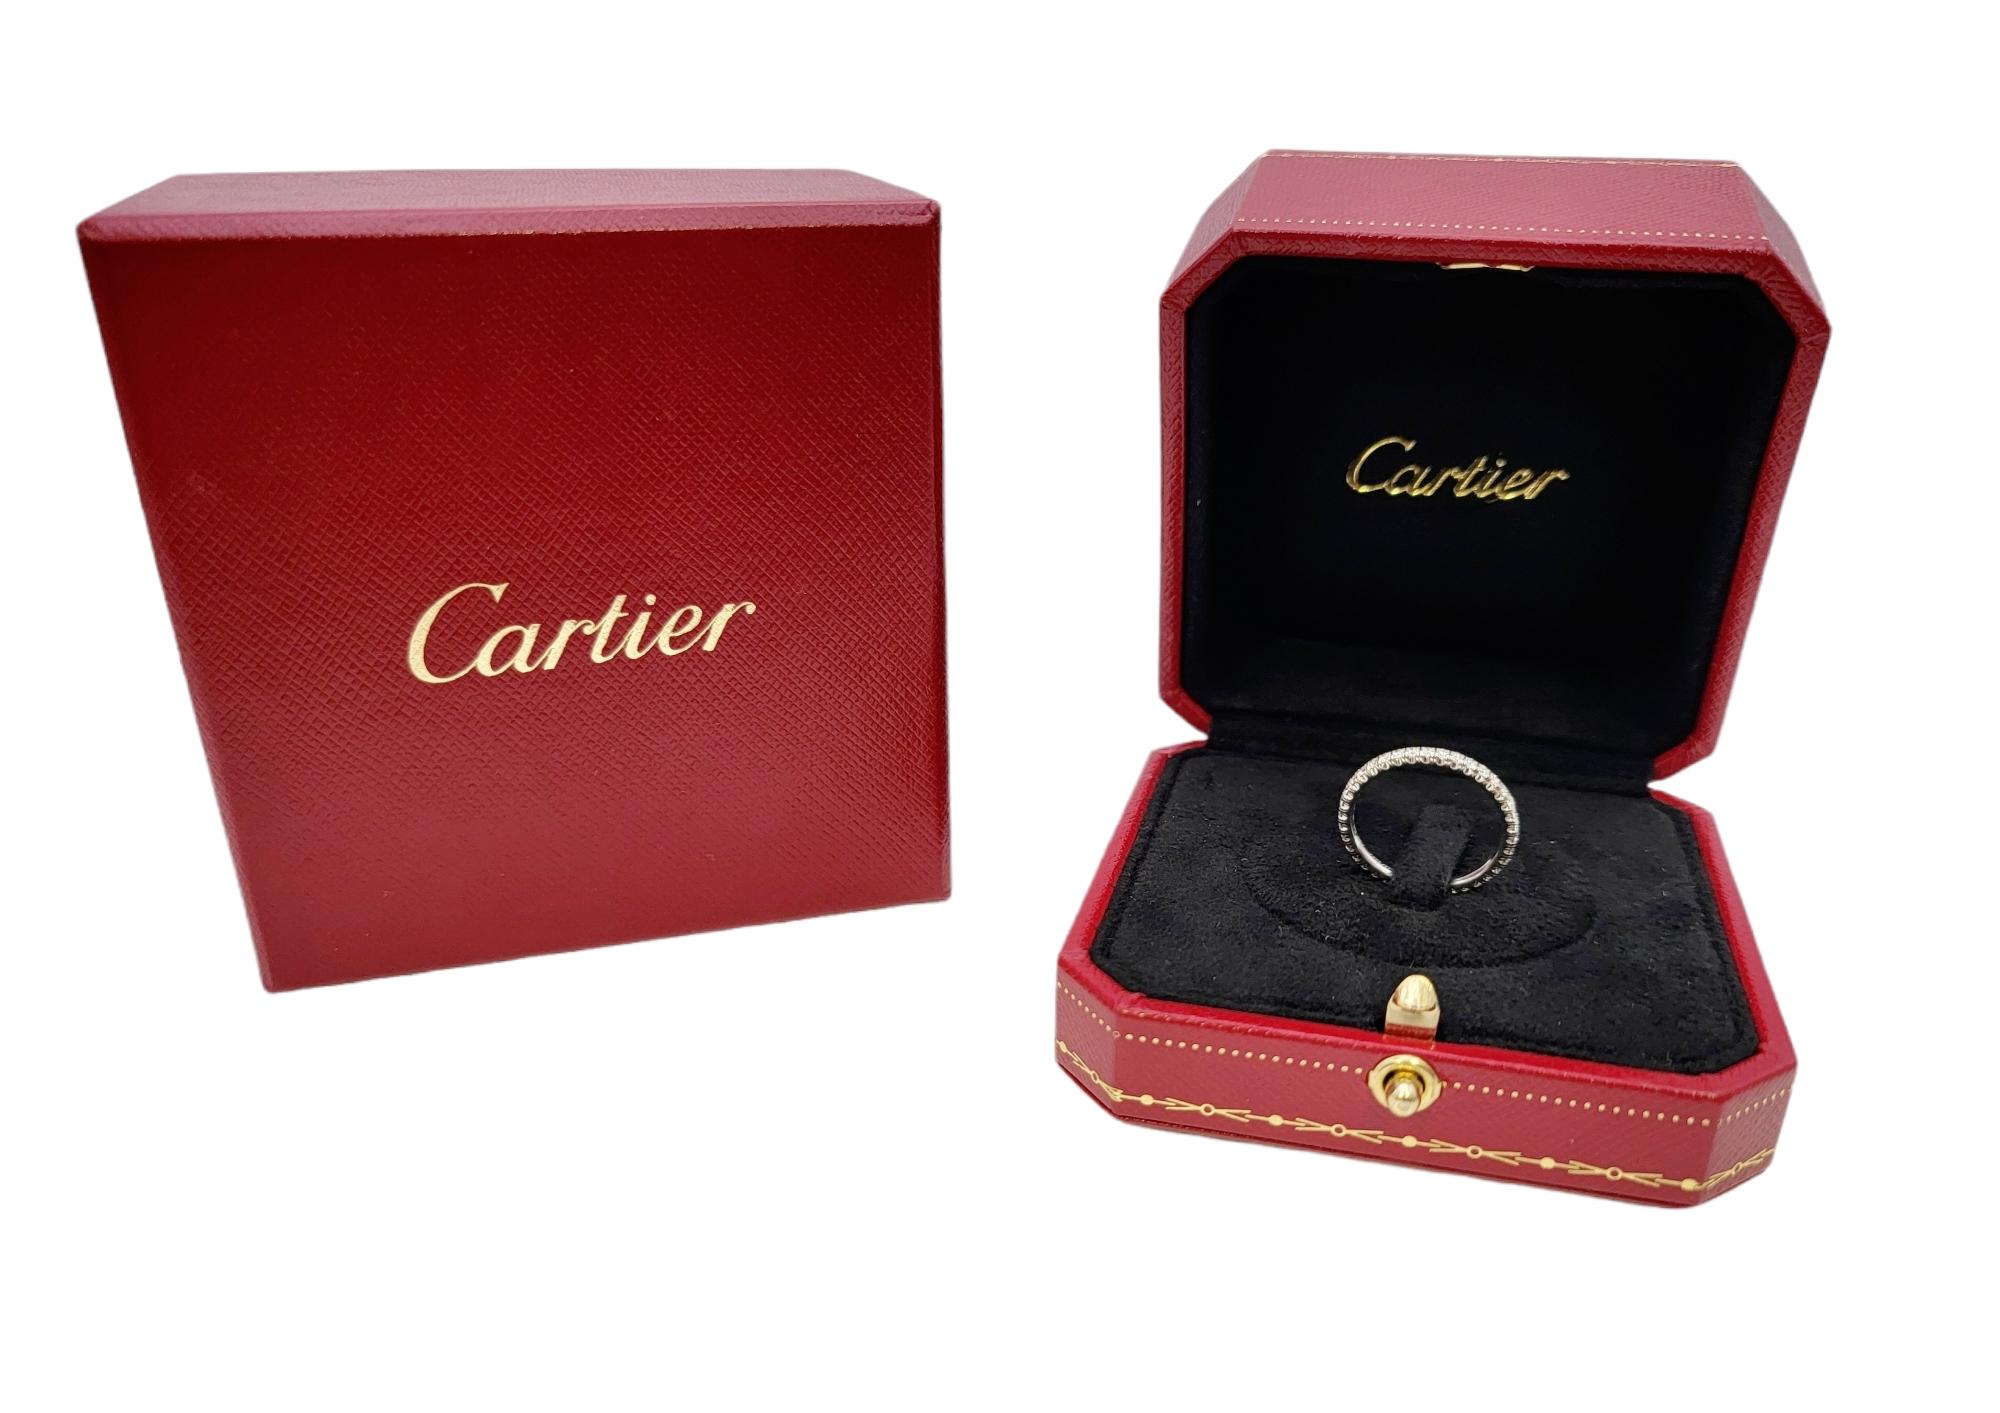 Etincelle de Cartier 18 Karat Gold Pave Diamond Eternity Wedding Band Ring 51 For Sale 6